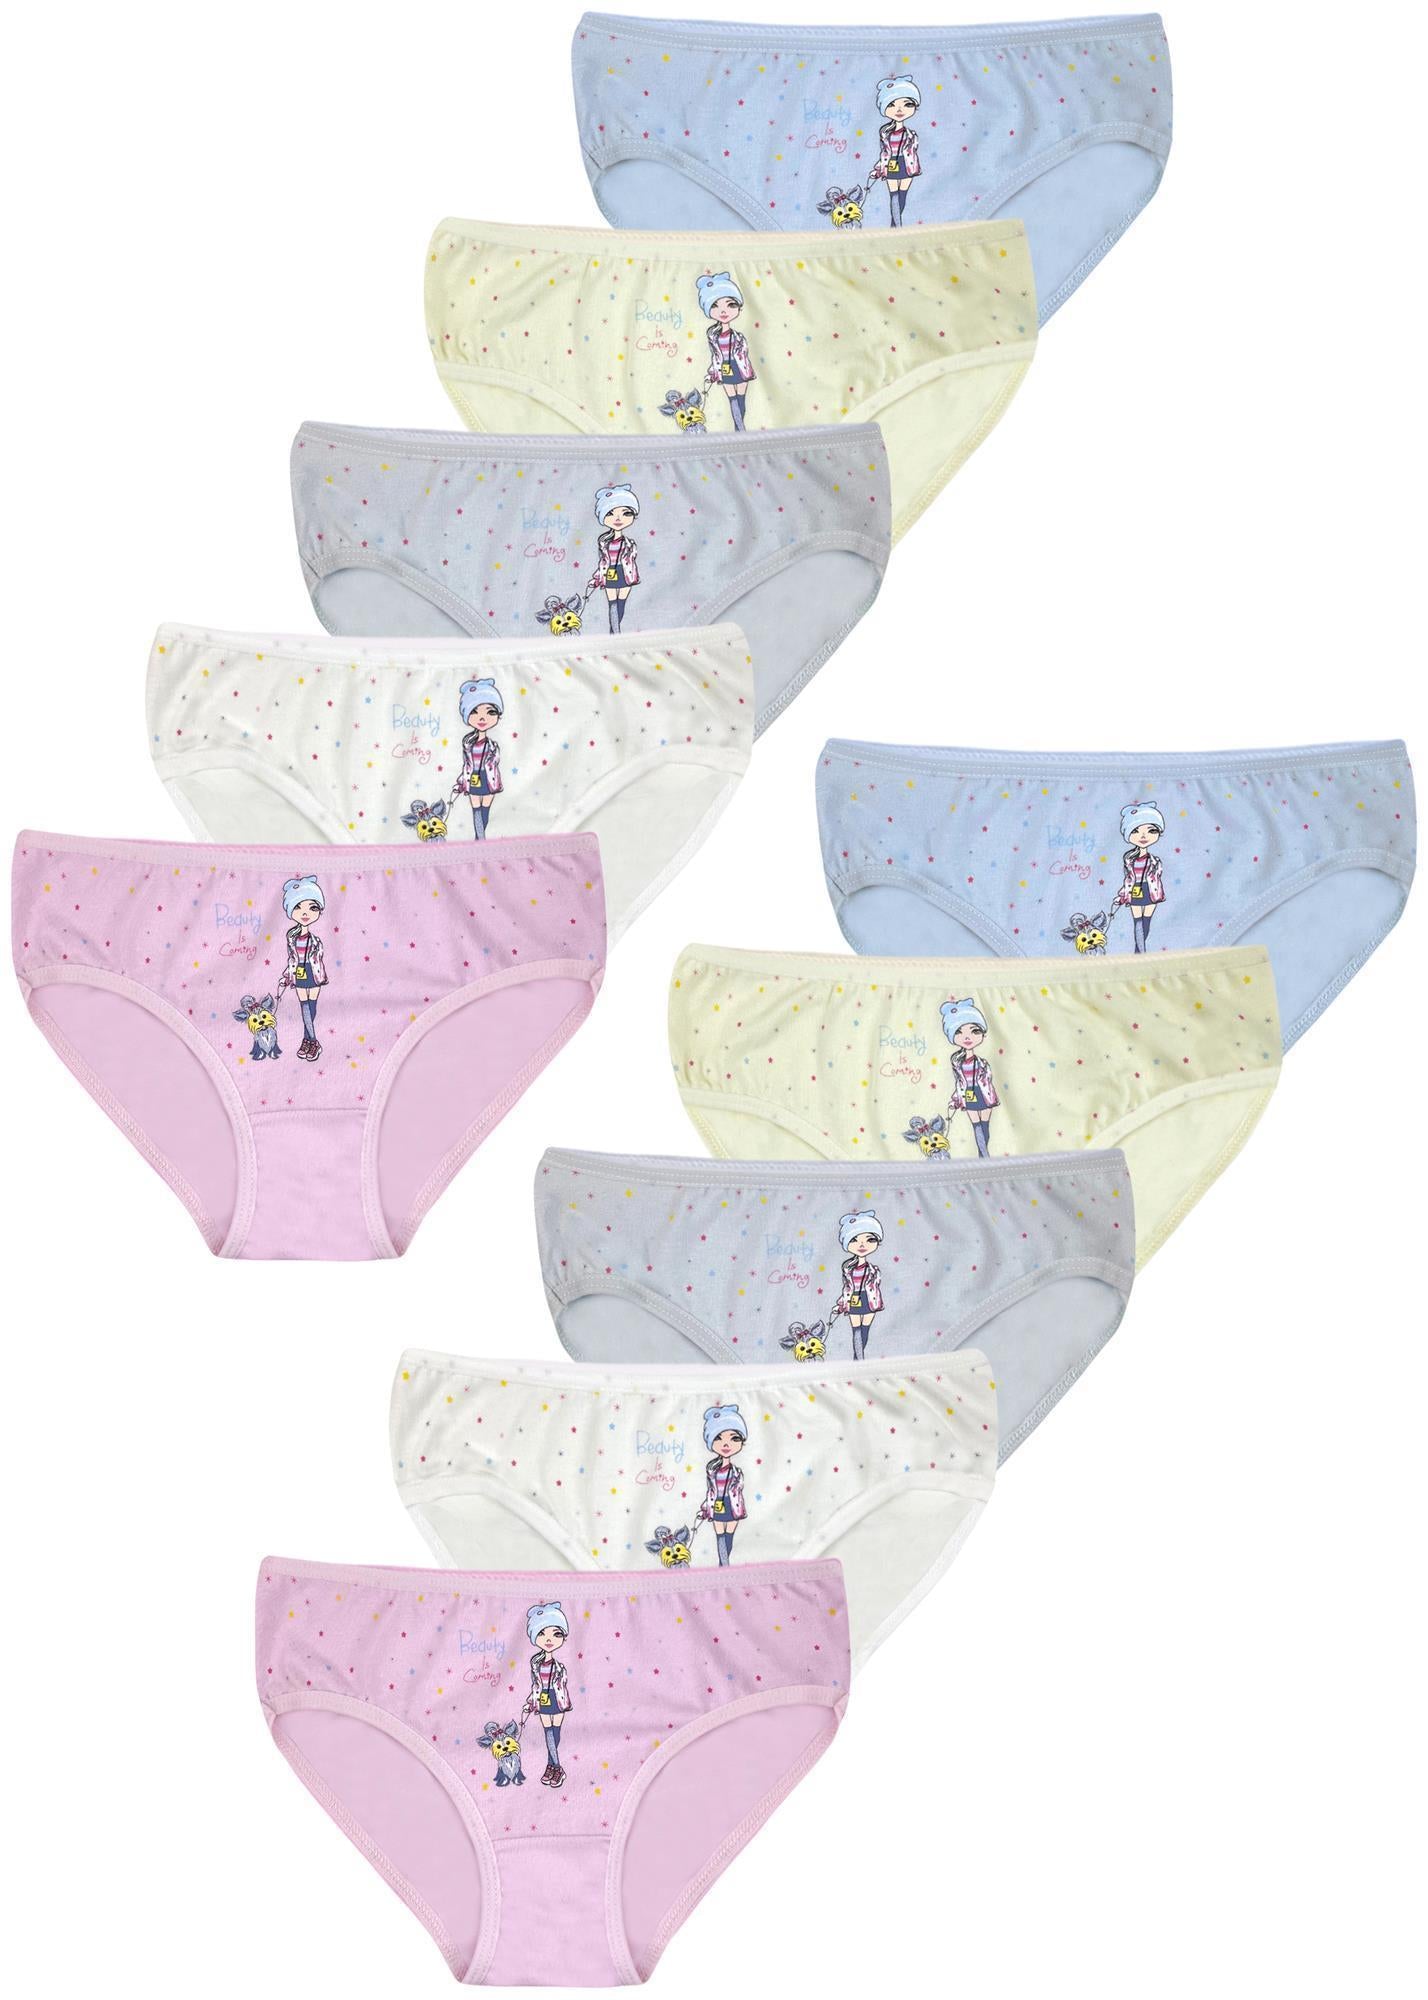 10 Mädchen Kinder Slips Baumwolle Unterhosen Unterwäsche 92-170